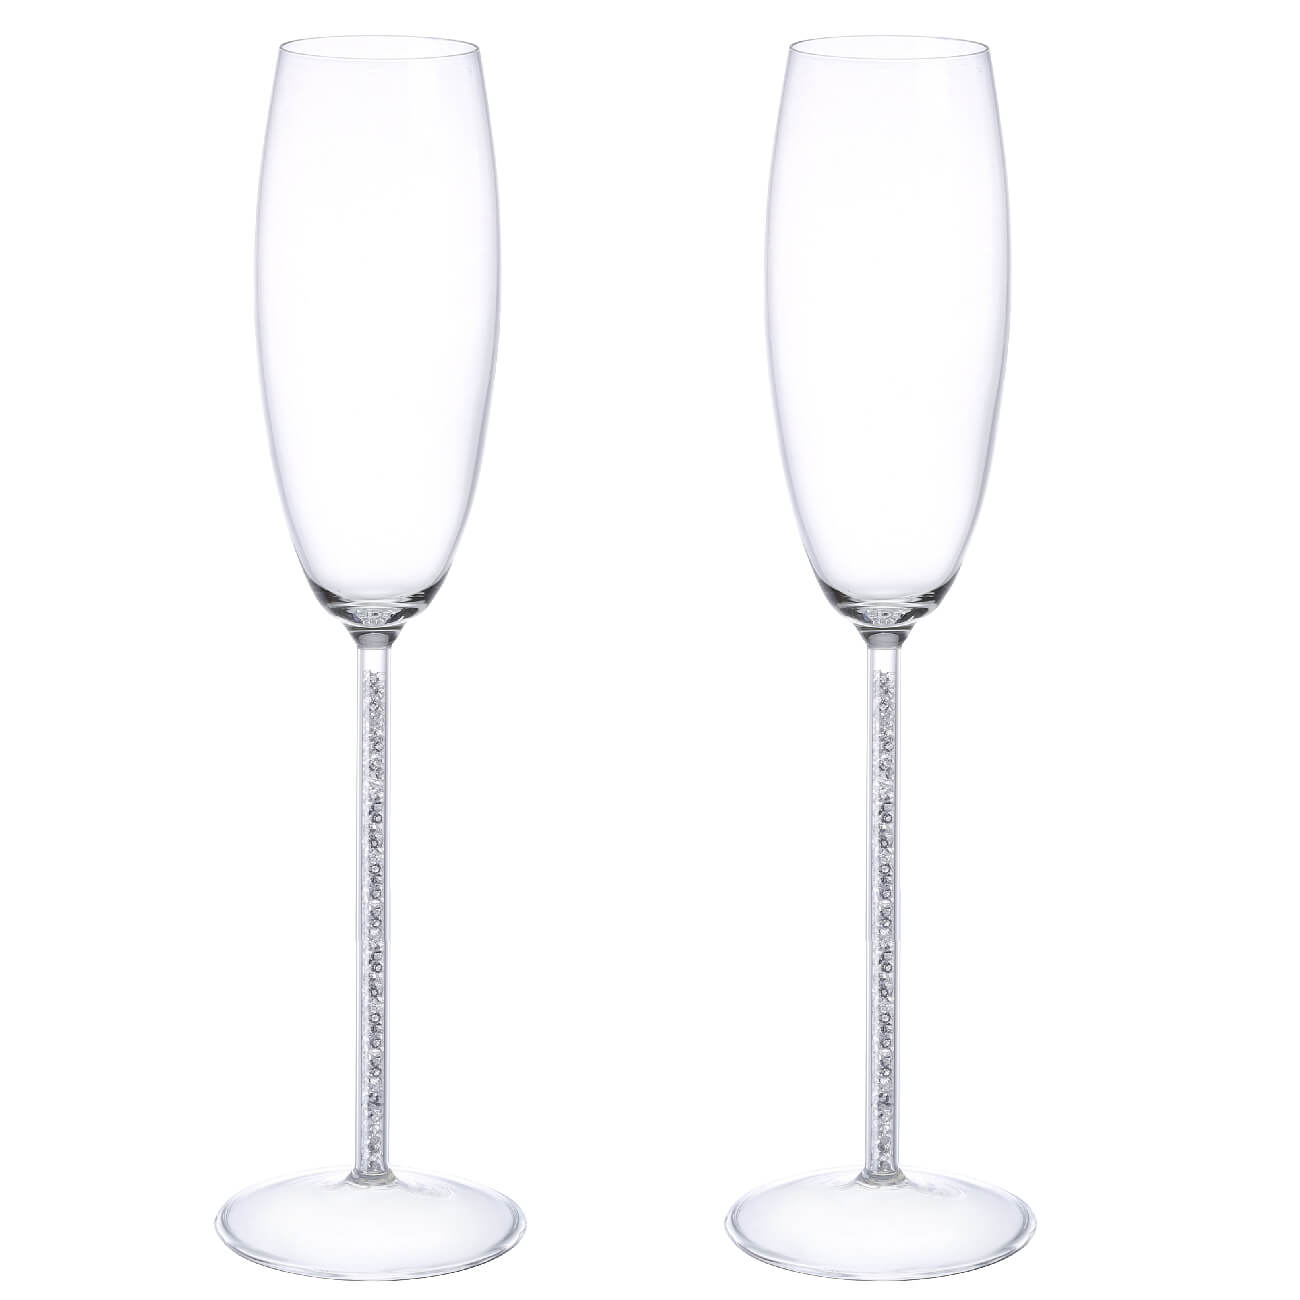 Kuchenland Бокал для шампанского, 180 мл, 2 шт, стекло/стразы, Crystal decor стразы пришивные